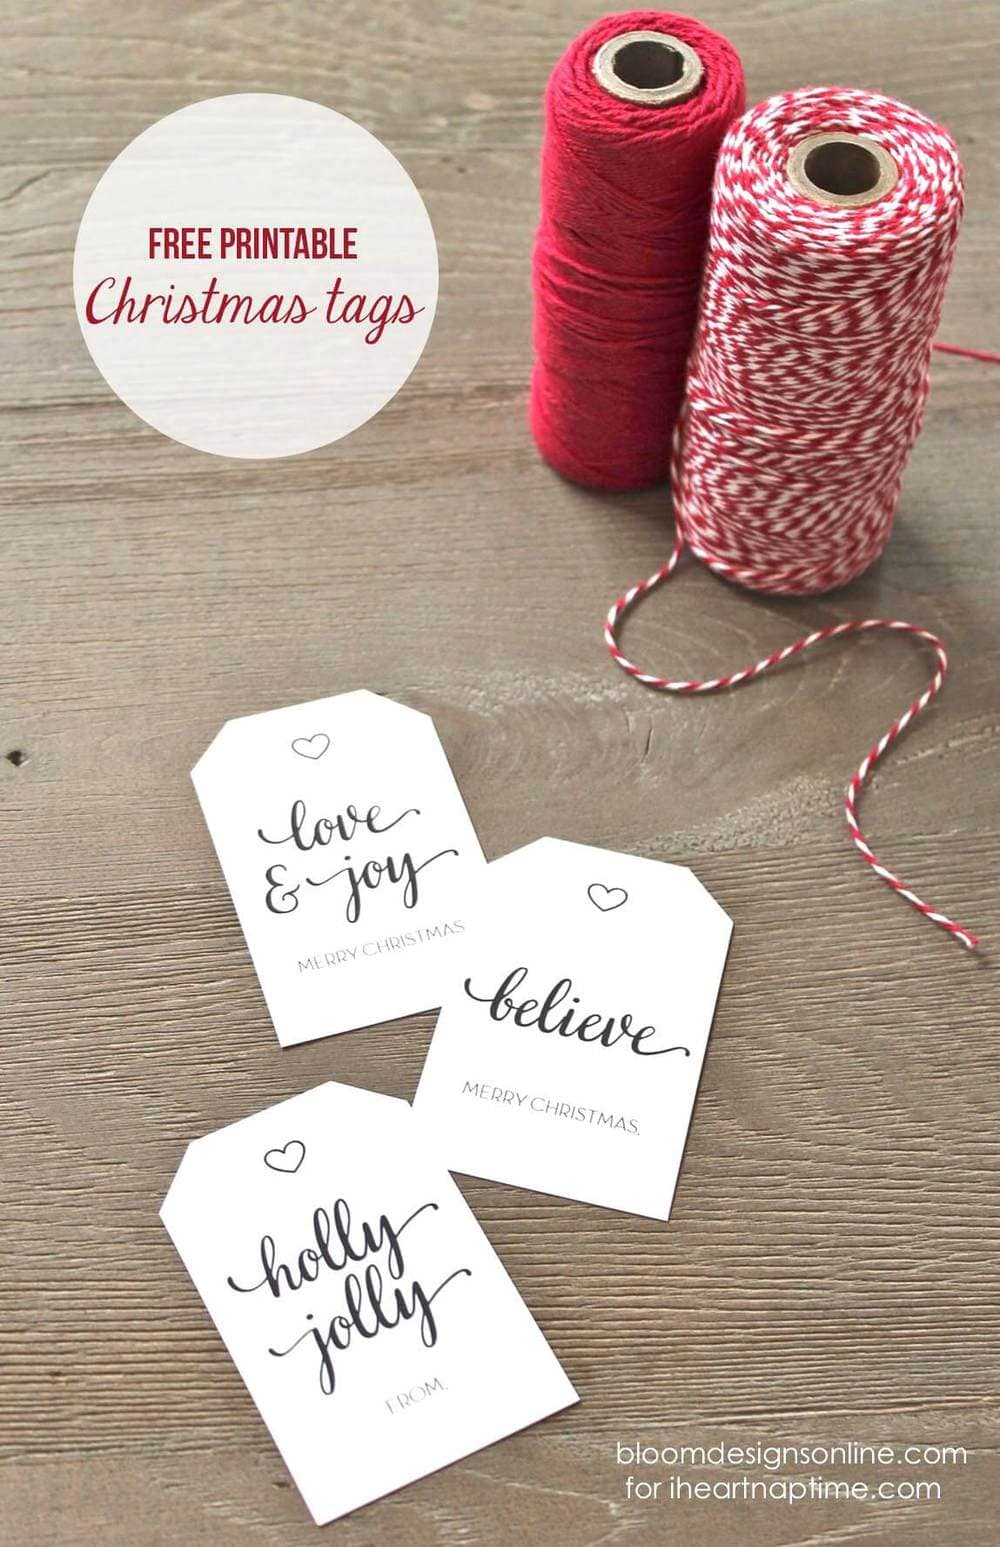 Free printable Christmas tags